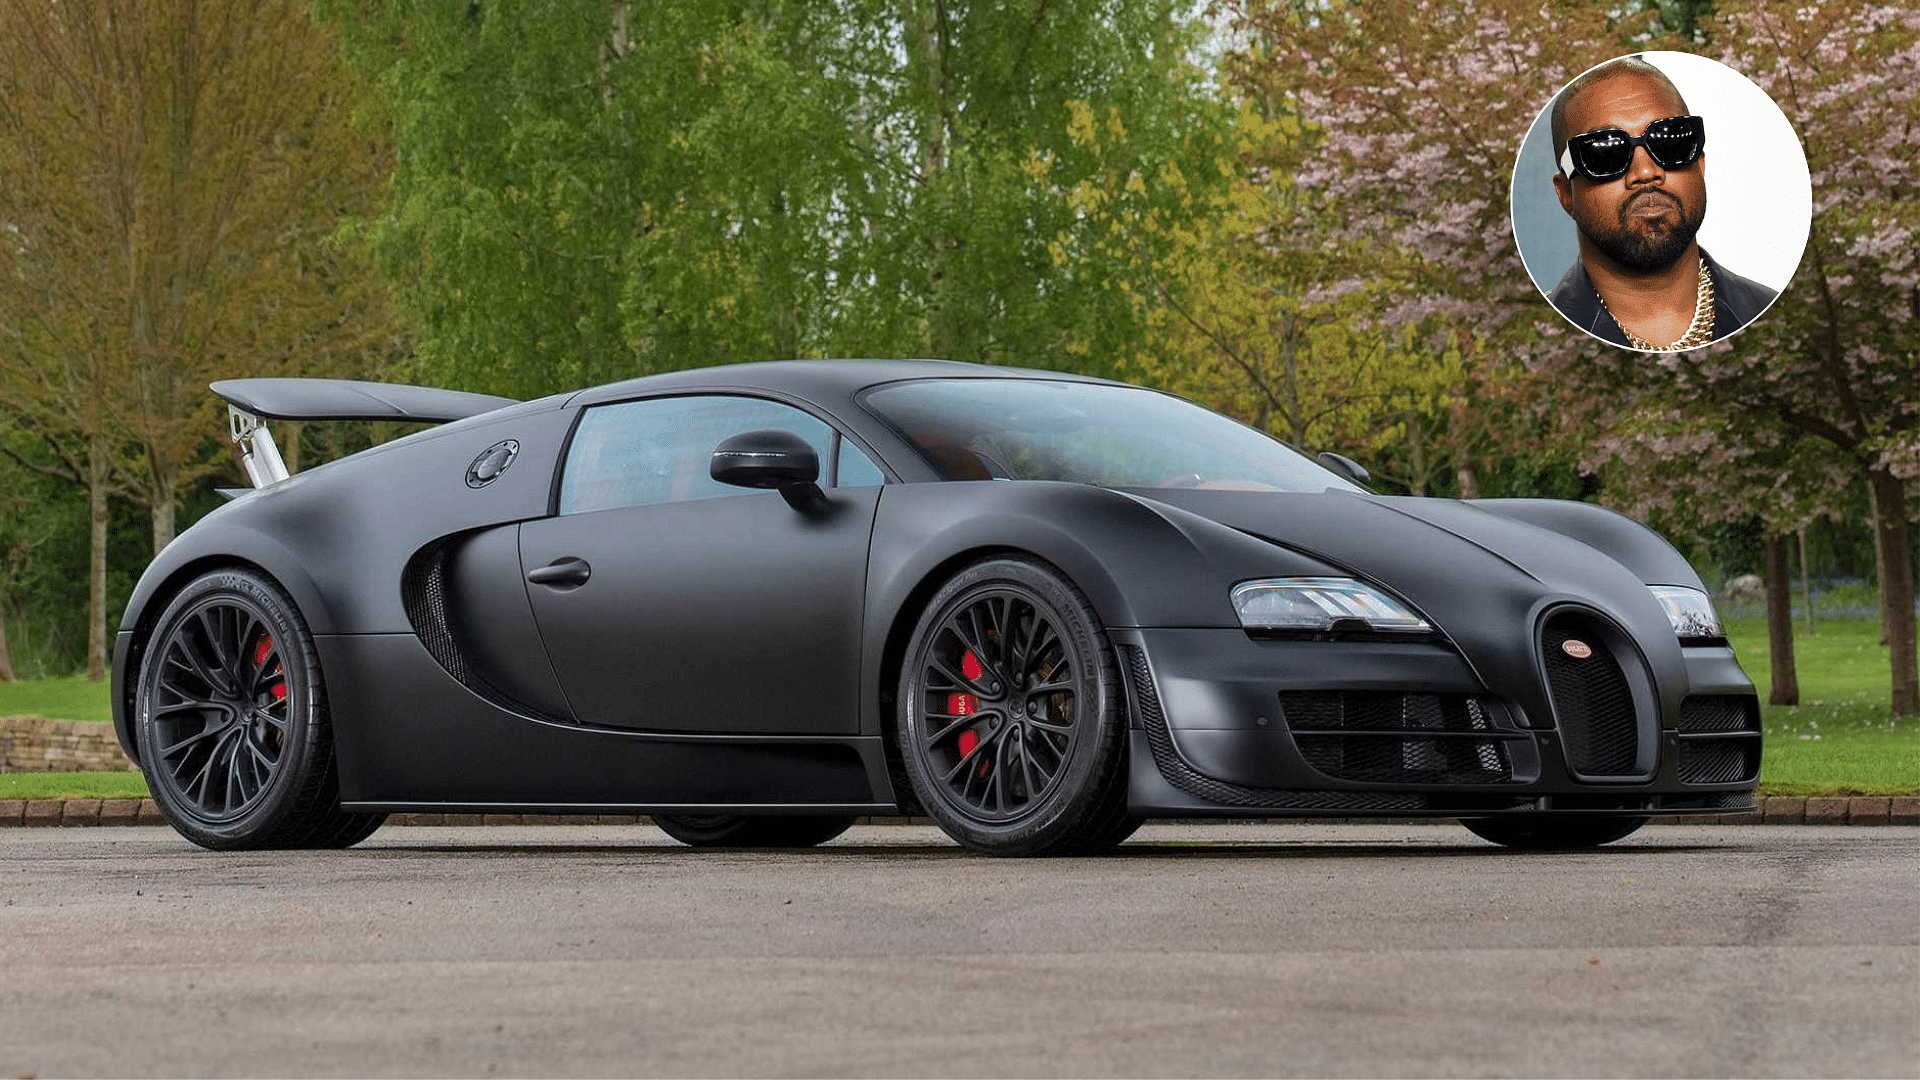 Kanye West's Bugatti Veyron